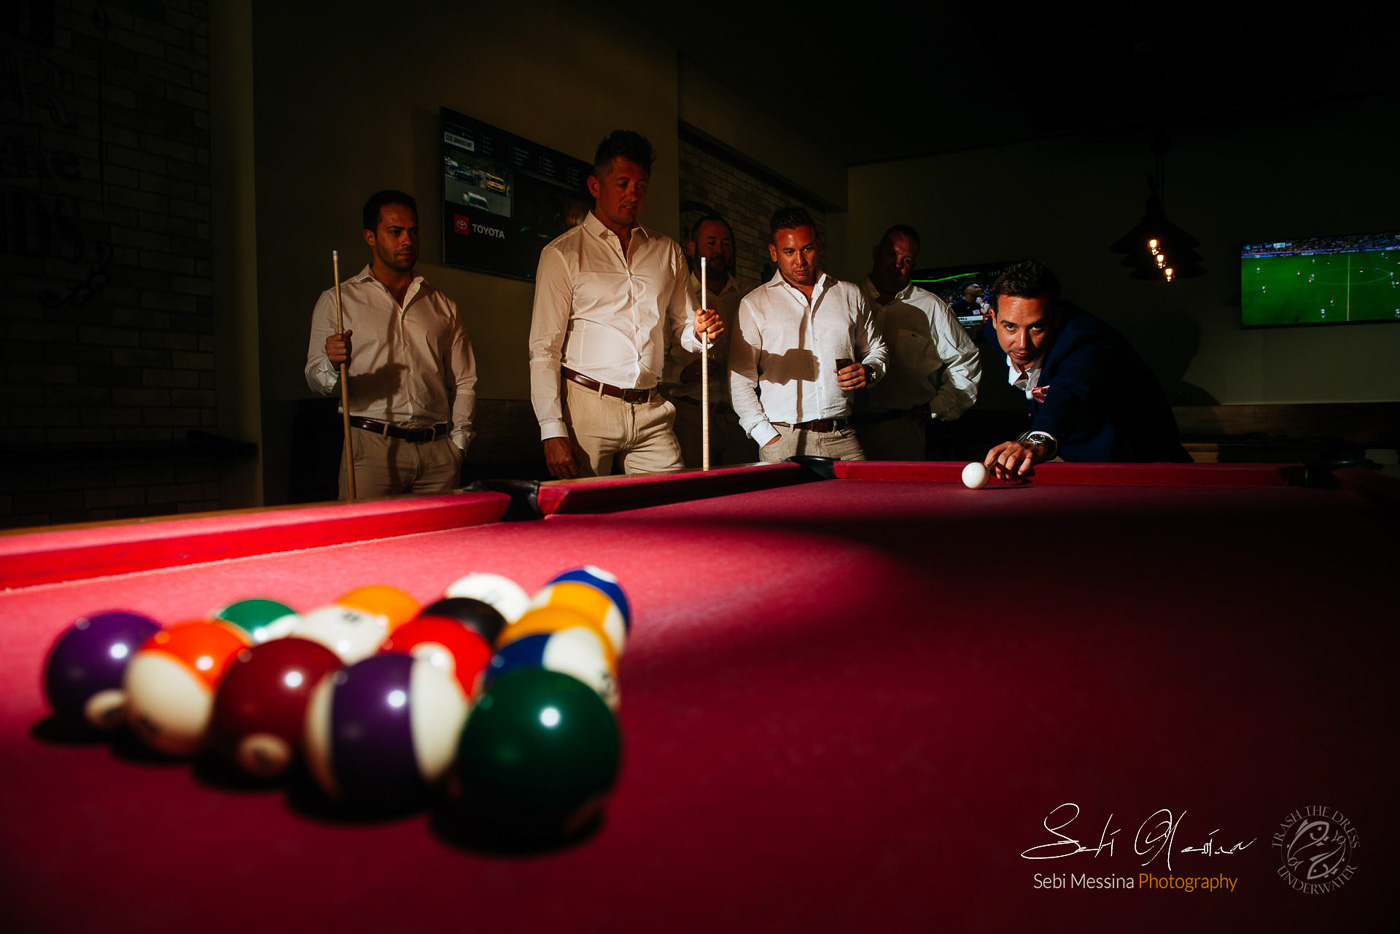 Groomsmen at a destination wedding in Cancun Mexico – Sebi Messina Photography